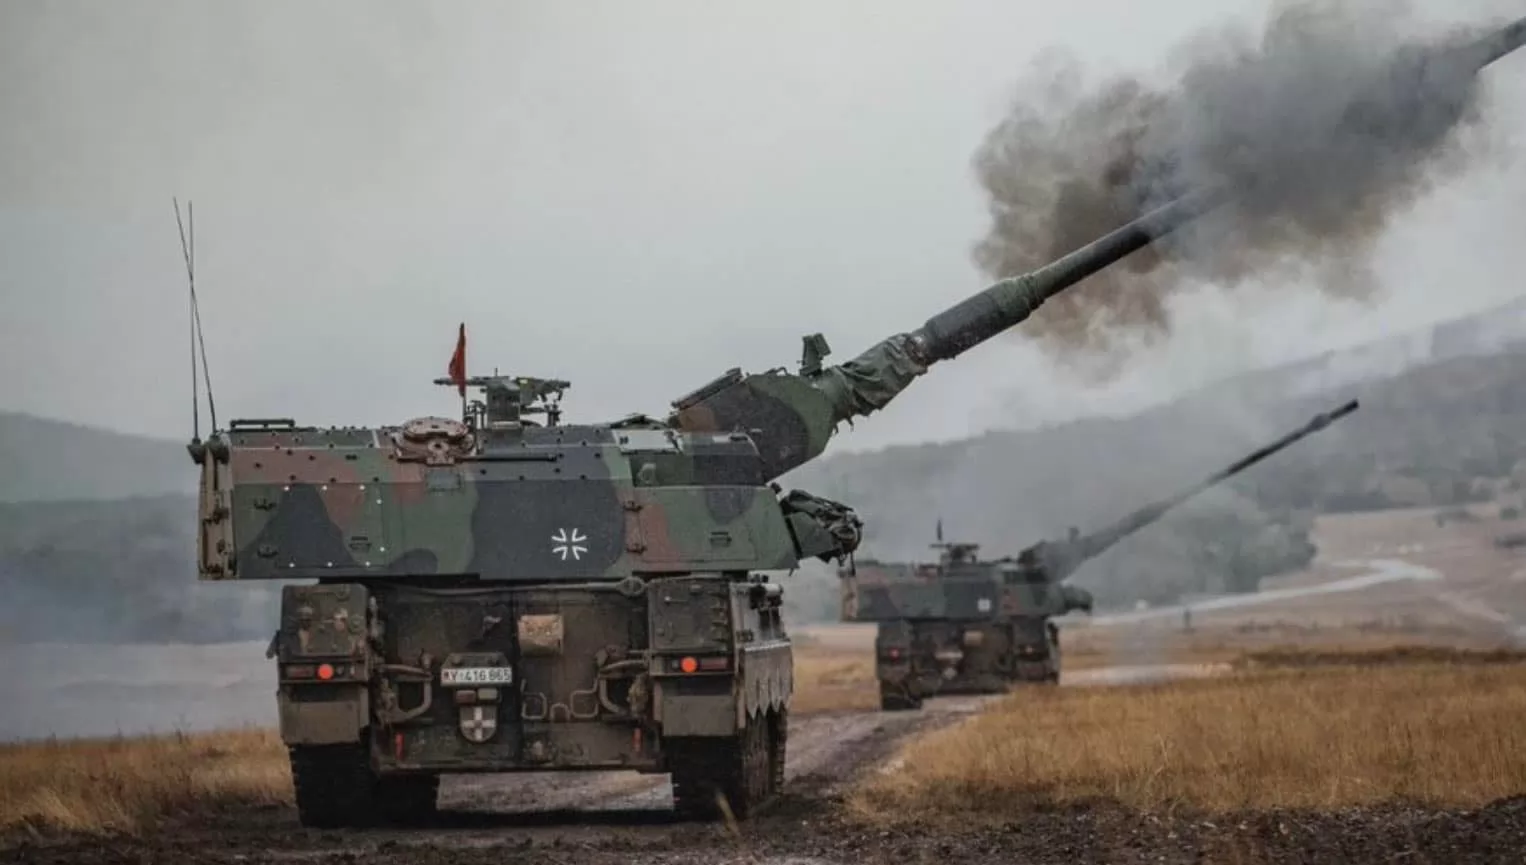 Panzerhaubitze 2000 zerstört russisches Gerät mit einem hochpräzisen "intelligenten" Geschoss SMArt 155 (Video)